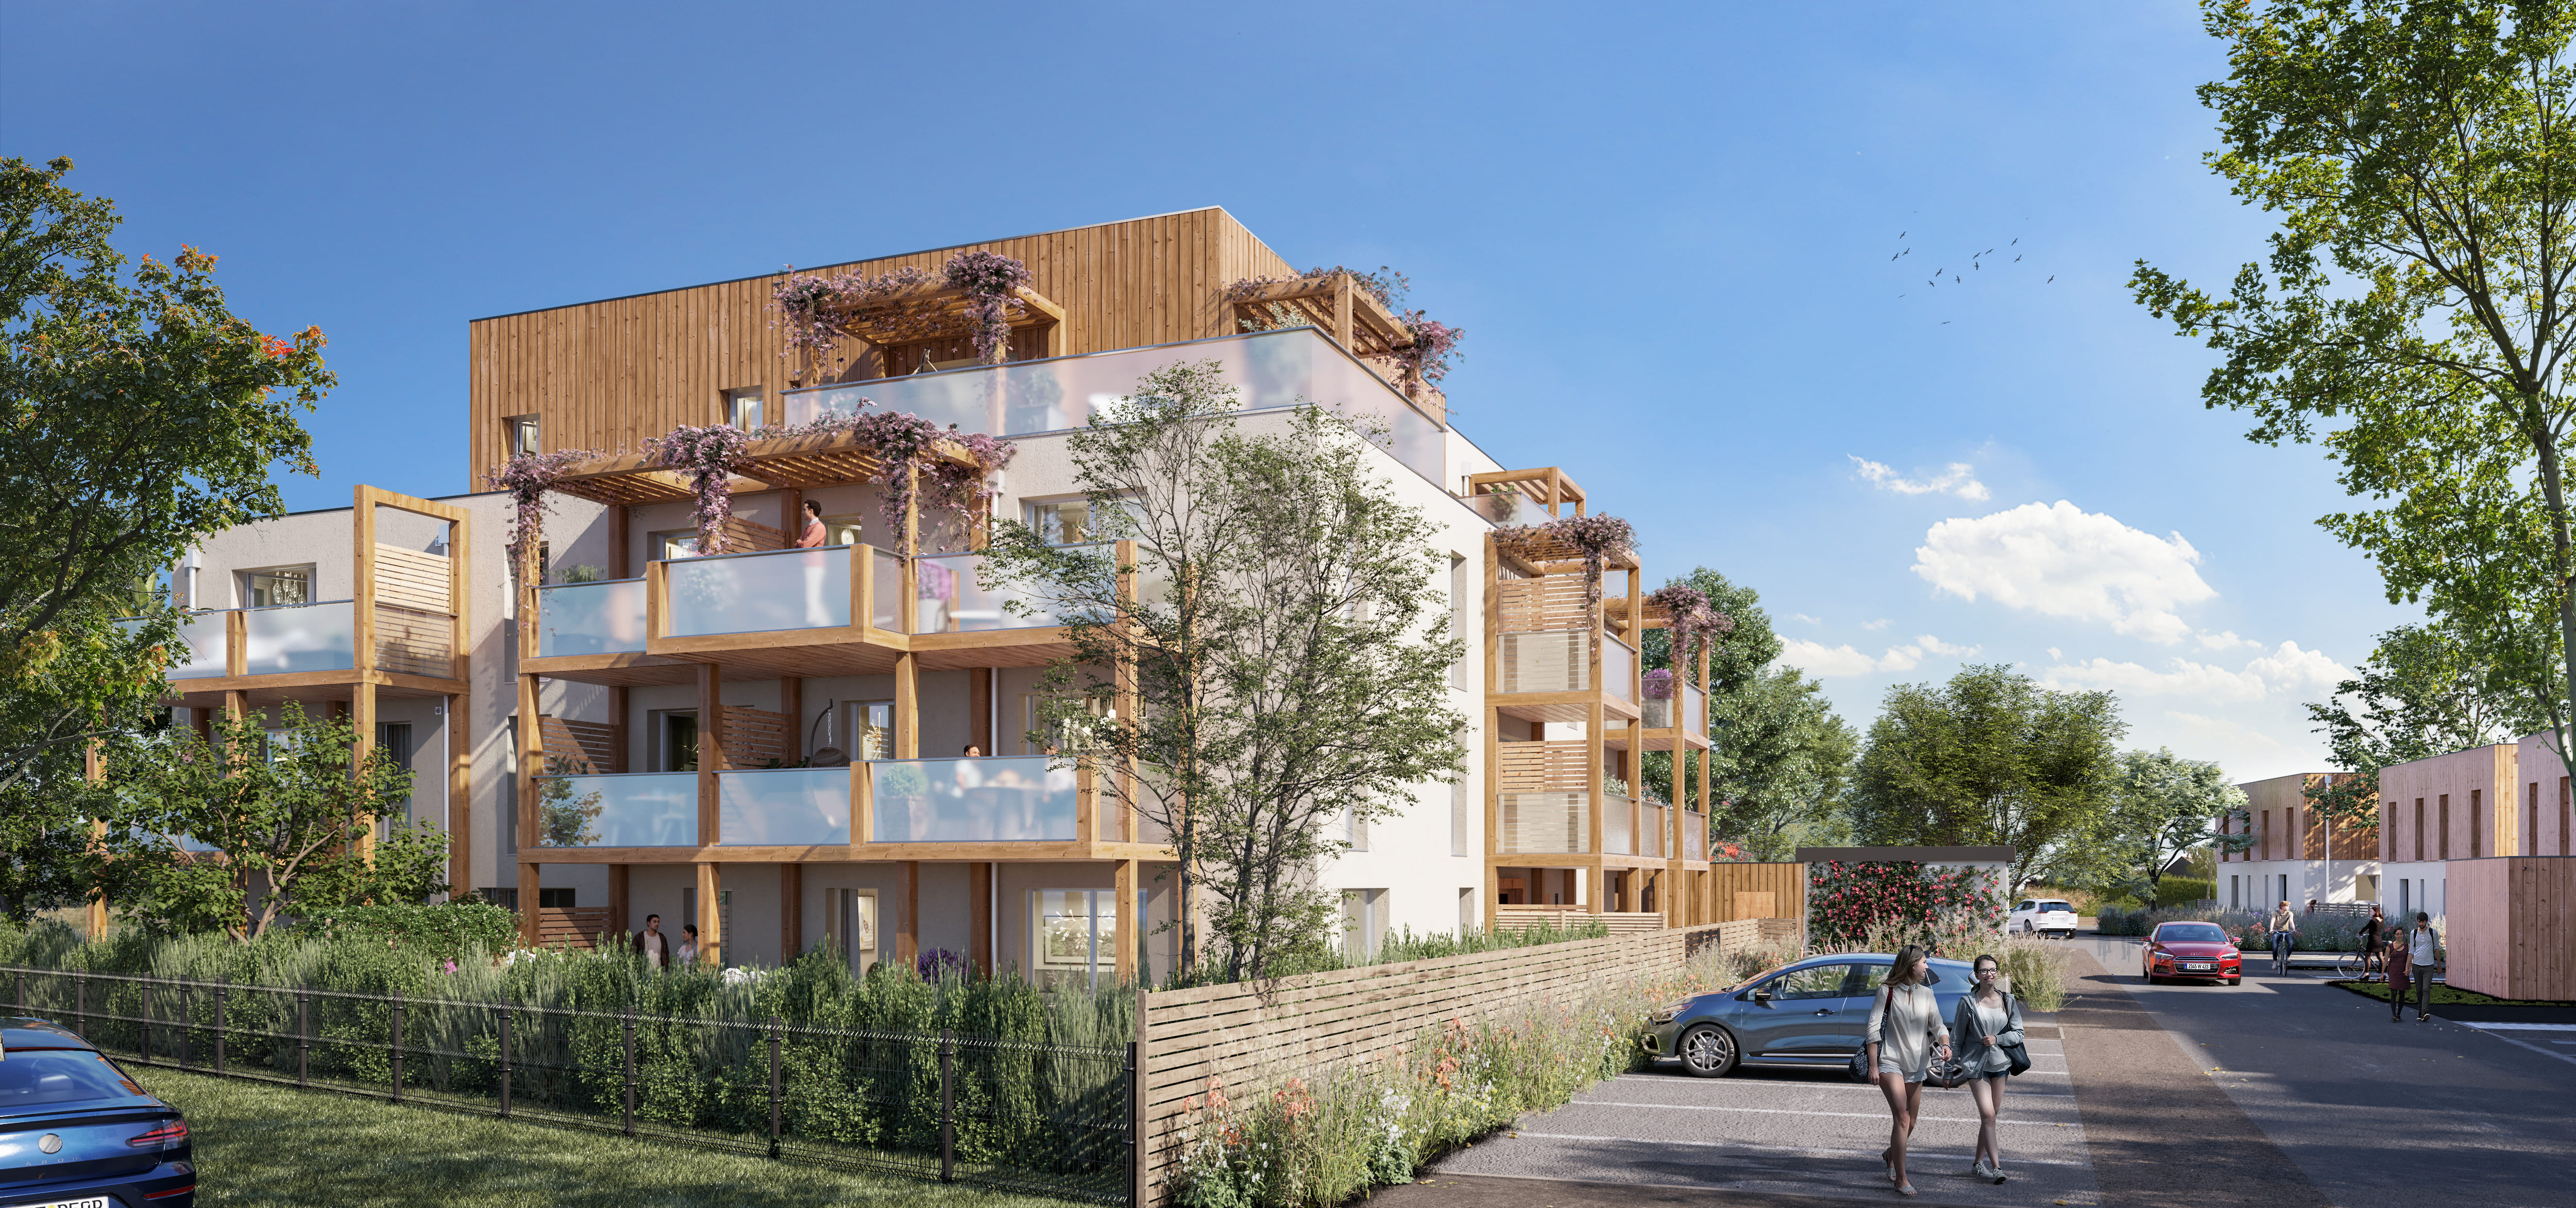 Programme immobilier neuf Écouflant quartier de l'hippodrome à 10 min d'Angers